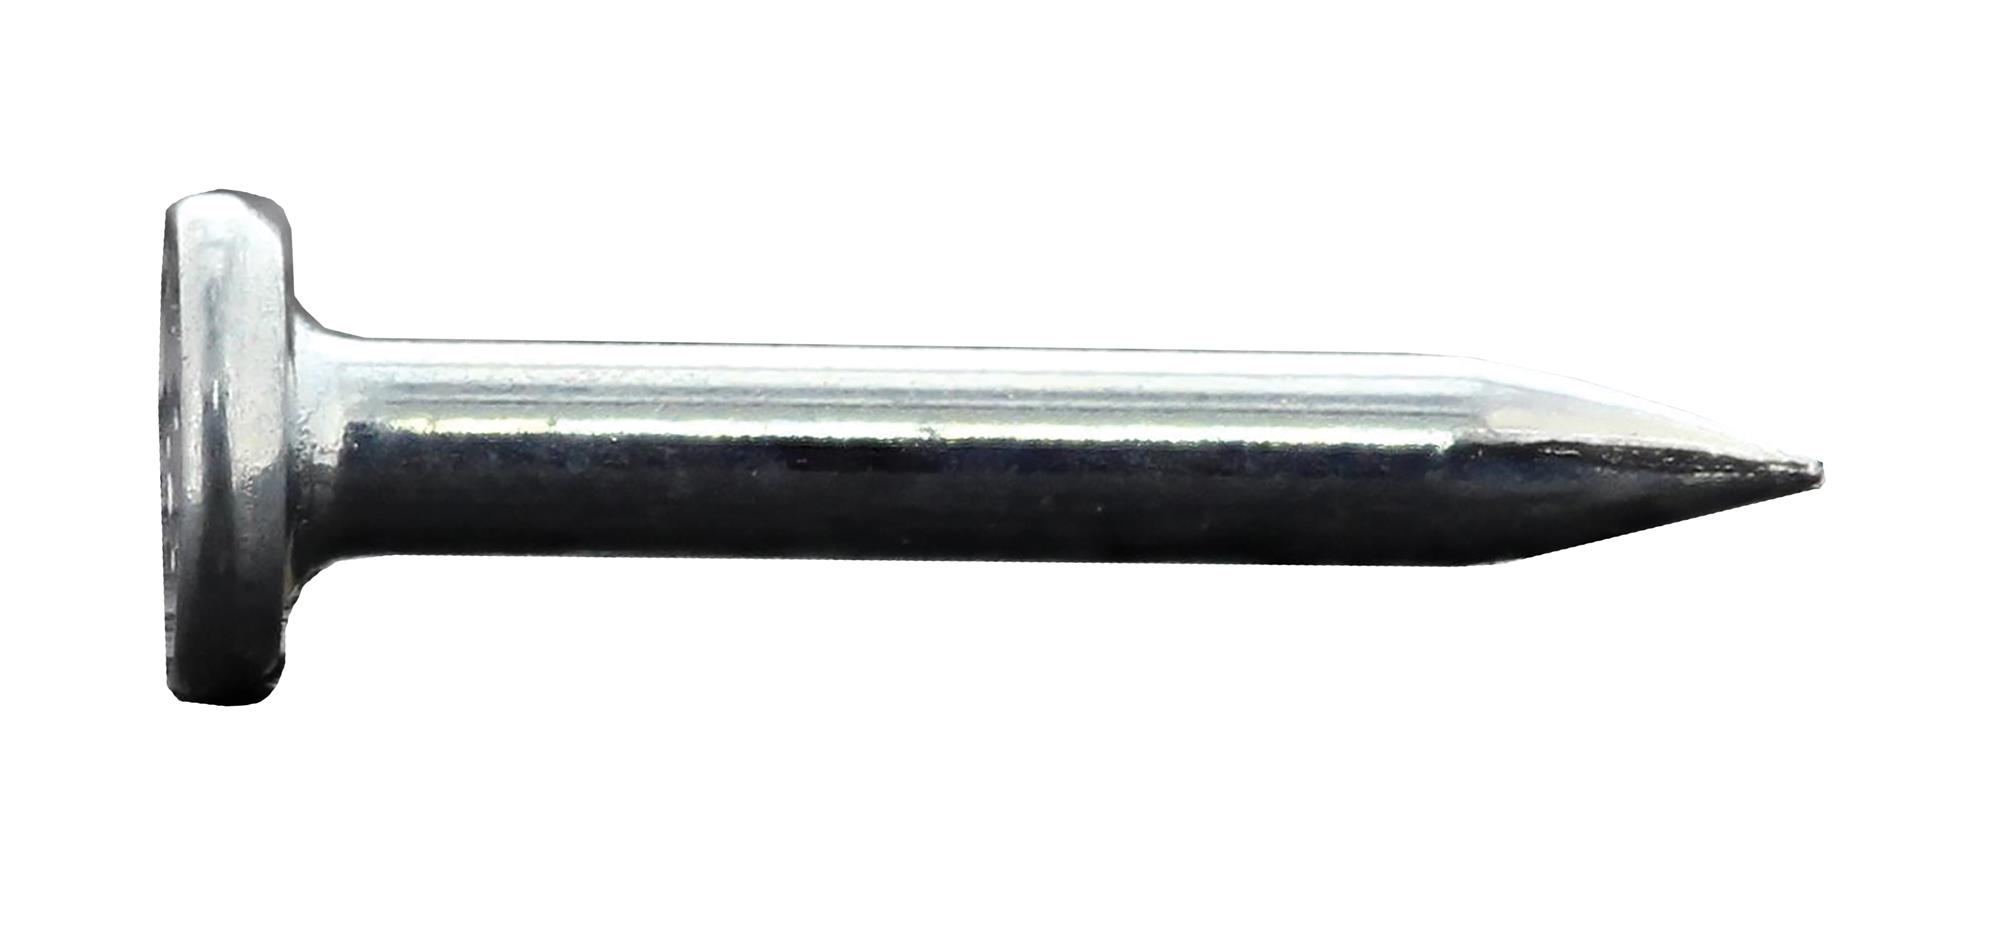 ITW Spit Nägel PULSA 800 C6-25 - Standardnägel mit Gas für Beton und Stein, 500 Stk.